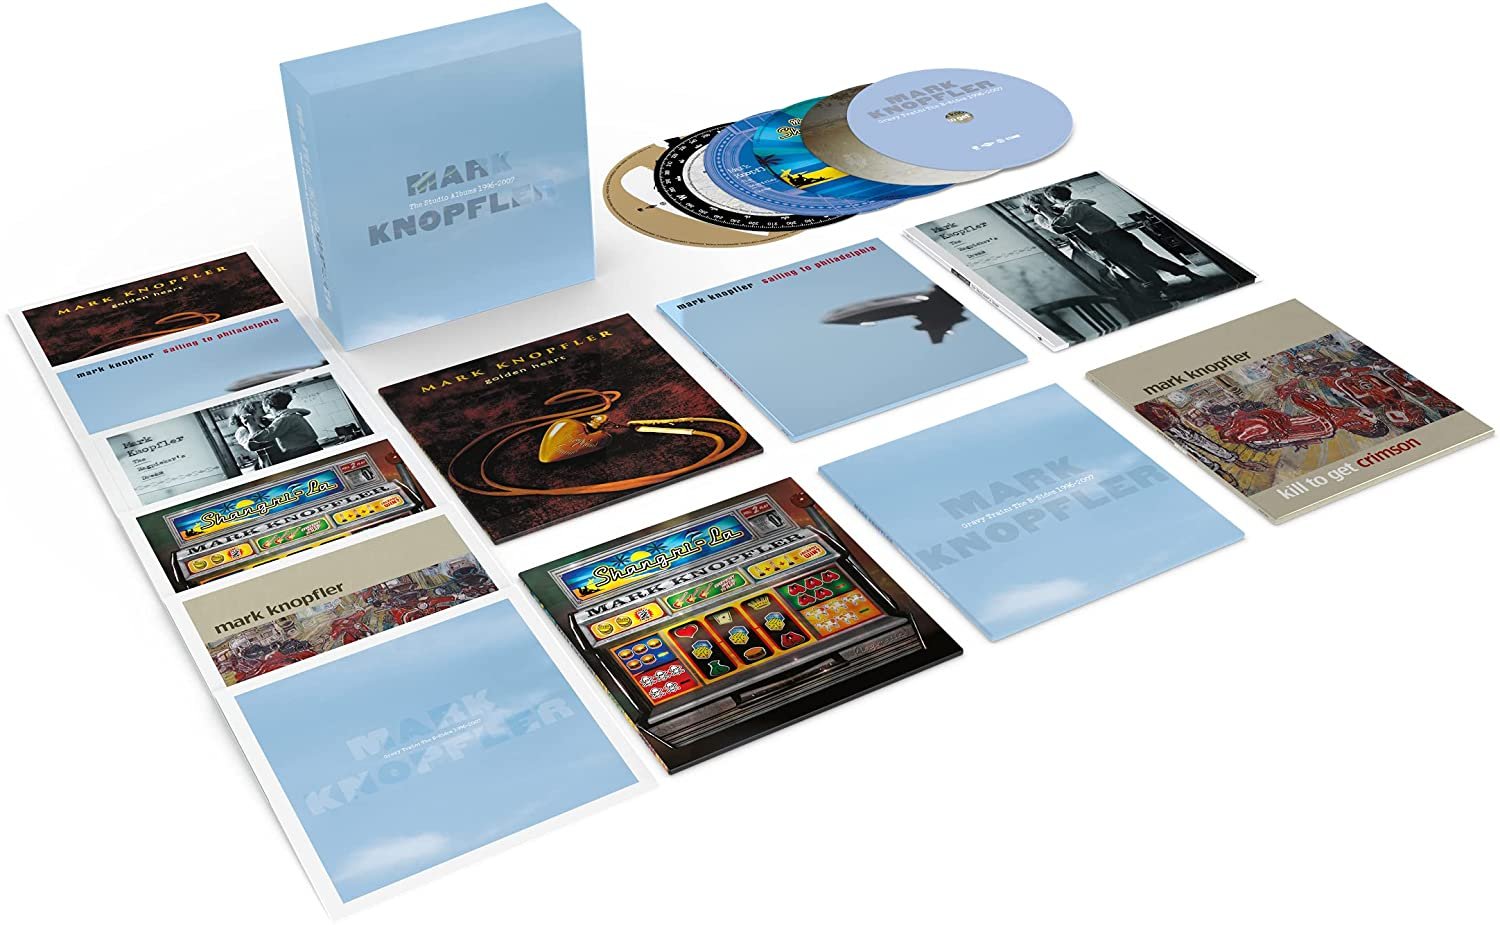 CD Shop - KNOPFLER, MARK STUDIO ALBUMS 1996-2007